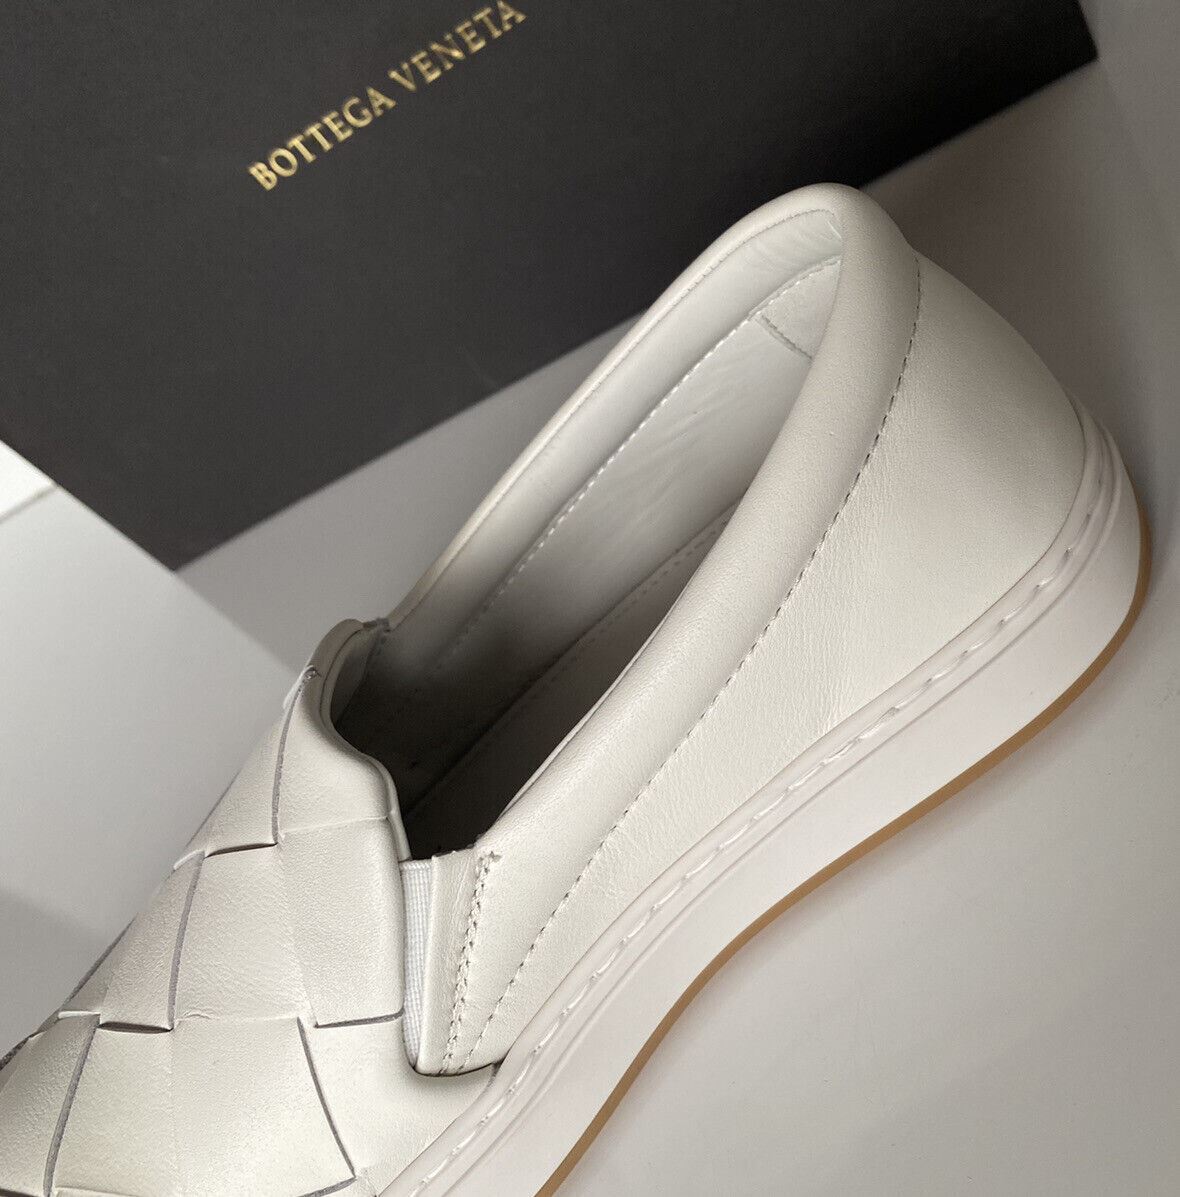 NIB 760 долларов США Bottega Veneta Белые туфли из телячьей кожи с резиновой подошвой и оптикой 12 608751 